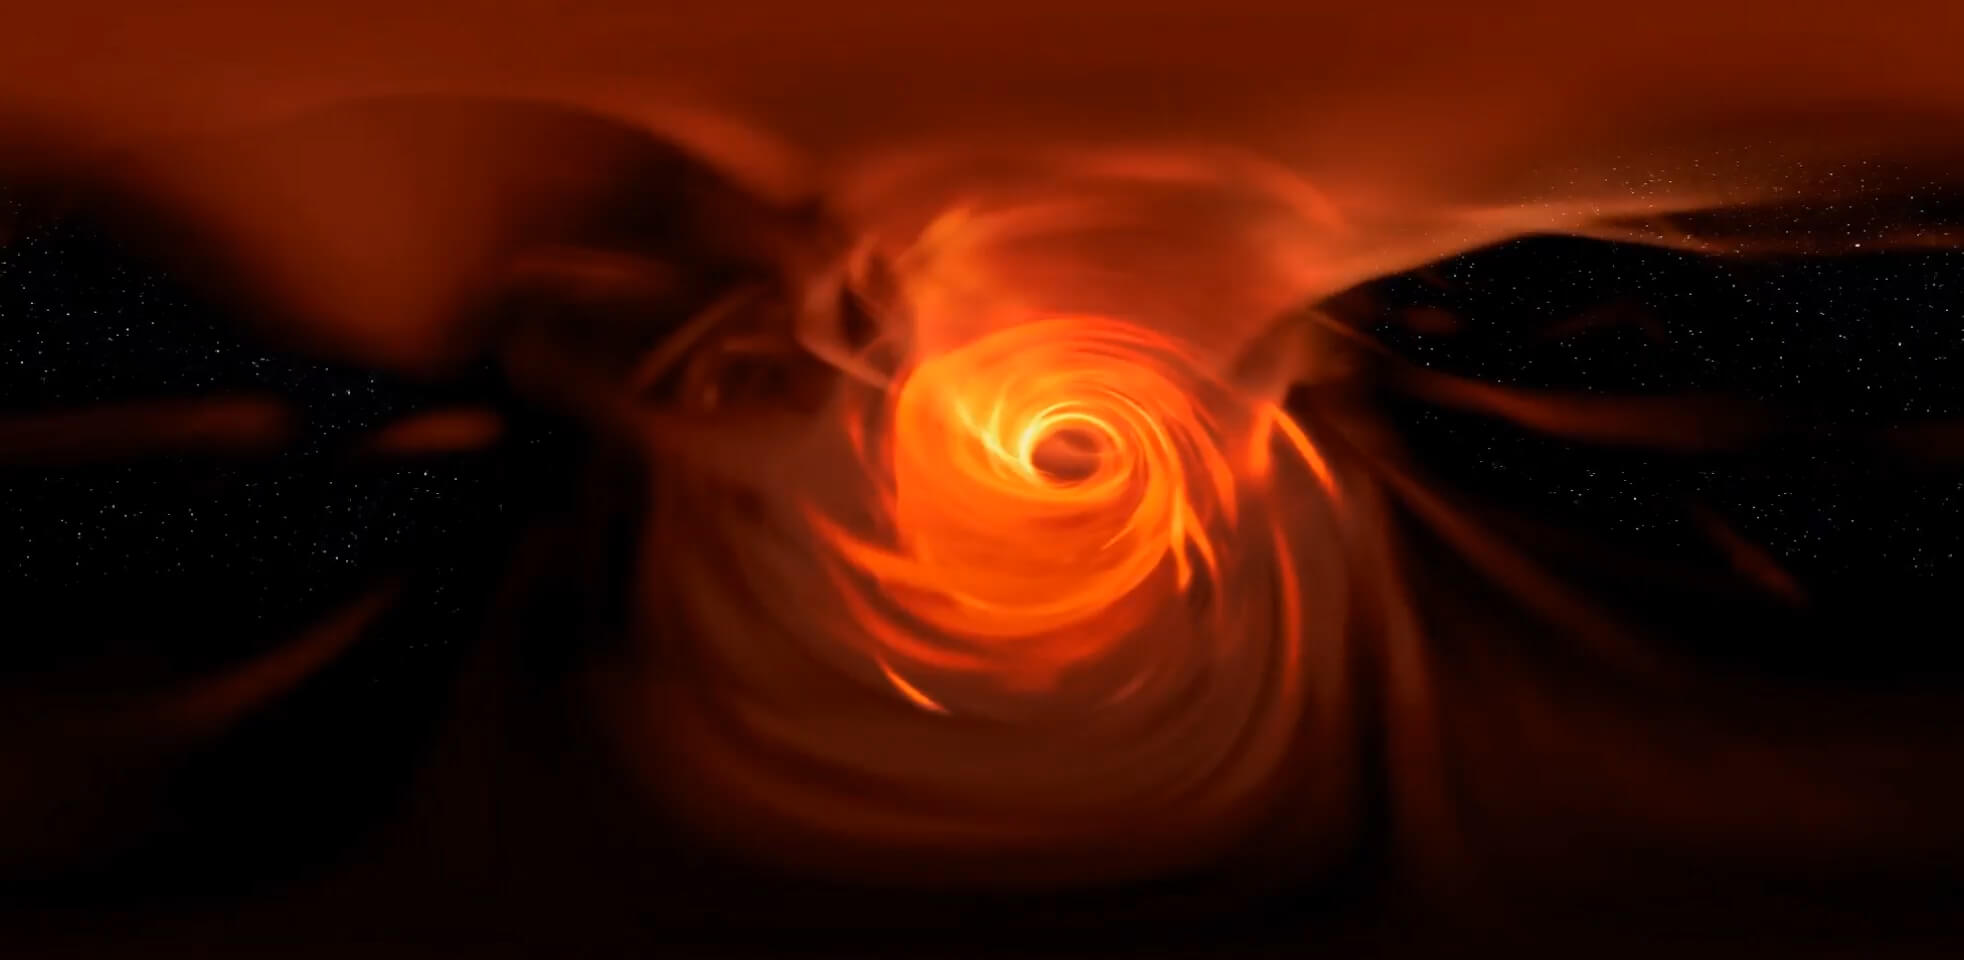 Hole V lt;pgt;Среди бесчисленного множества космических объектов, самыми загадочными являются черные дыры - области пространства-времени, сила притяжения которых настолько велика, что даже фотоны света не могут вырваться за пределы их горизонта событий. Считается, что сверхмассивные черные дыры находятся в центрах галактик и Млечный Путь - не исключение. И хотя наши знания о Вселенной и ее обитателях ограничены, ученые продолжают собирать их по крупицам. По мере развития технологий важнейшим научным инструментом стали компьютерные модели - с их помощью исследователи разработали реалистичные модели Вселенной. Более того, ранее в этом году команда физиков из Амстердамского университета смоделировала горизонт событий черной дыры в лаборатории. Может показаться удивительным, однако искусственная черная дыра начала испускать излучение, как и предполагал знаменитый физик-теоретик Стивен Хокинг. Это открытие, вероятно, позволит ученым разработать совершенно новую физическую теорию, сочетающую общую теорию относительности (ОТО) и принципы квантовой механики. Но как?